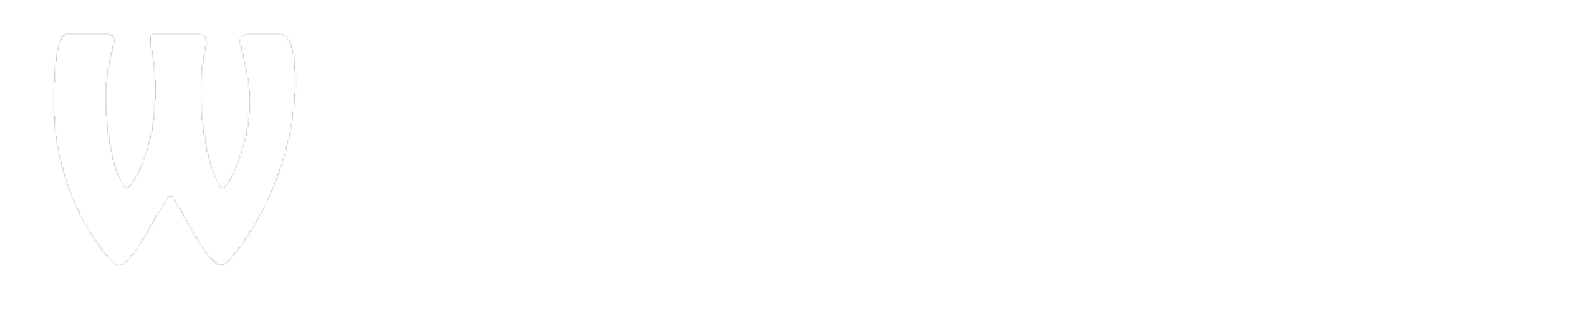 webprogr title